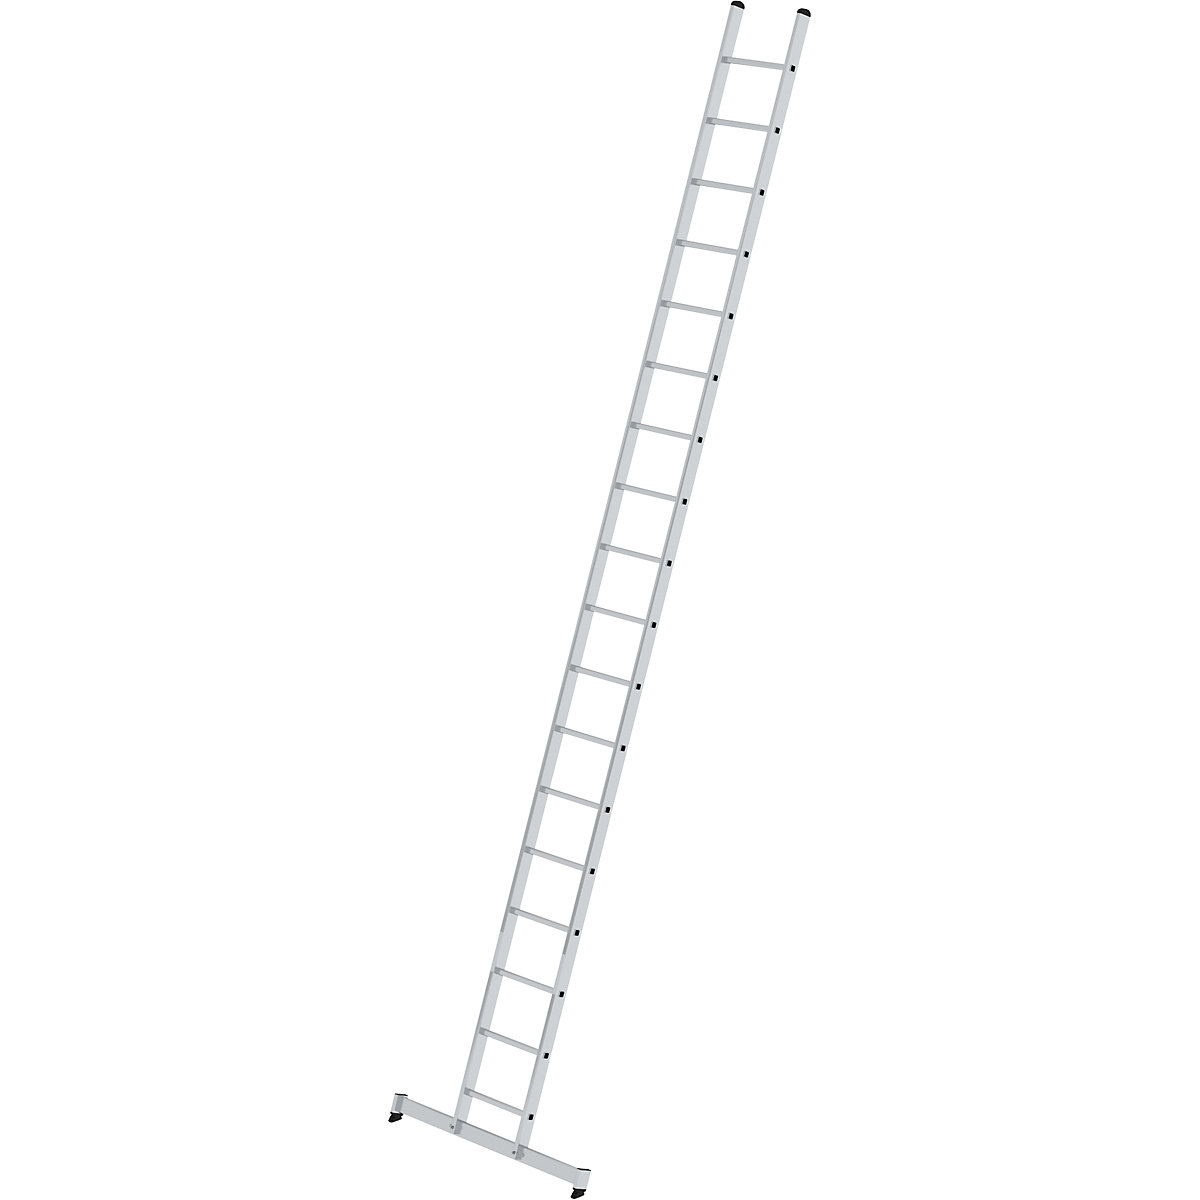 Prislonska lestev s klini – MUNK, profesionalna izvedba, širina 420 mm, 18 klinov, s prečko nivello®-8